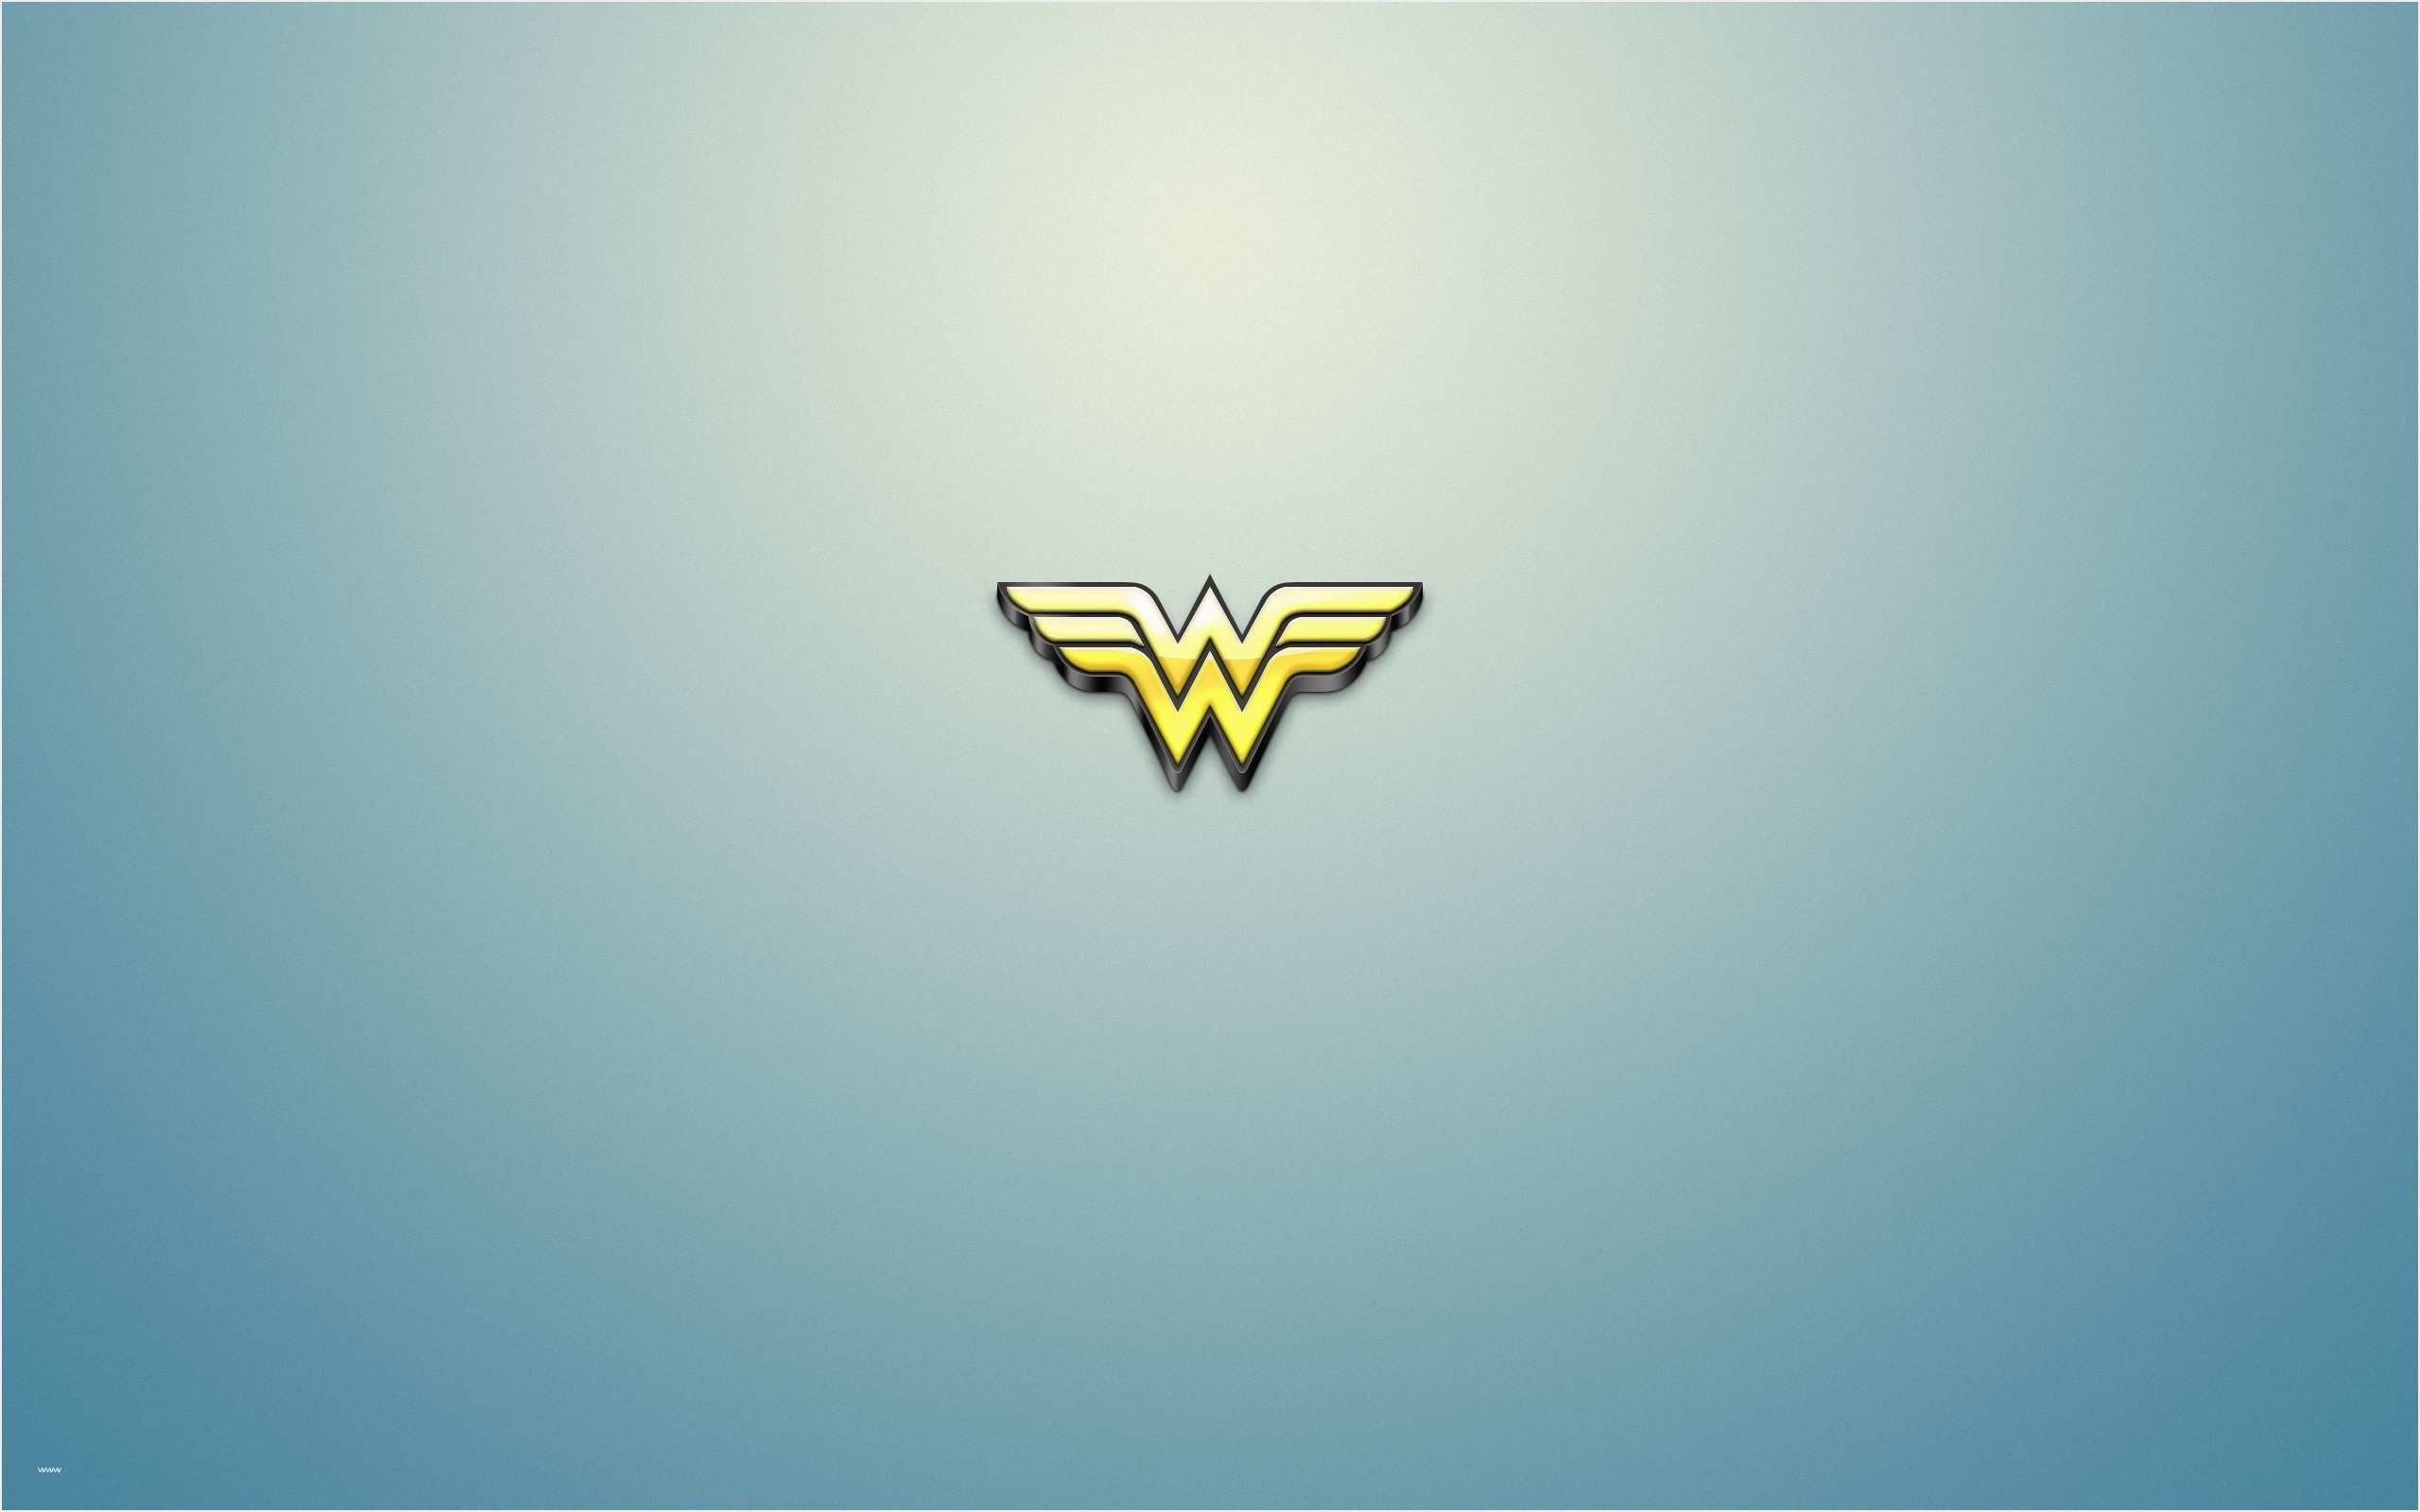 Awesome Woman Logo - Wonder Woman Logo Template Awesome Wonder Woman Logo Wallpaper ·â ...